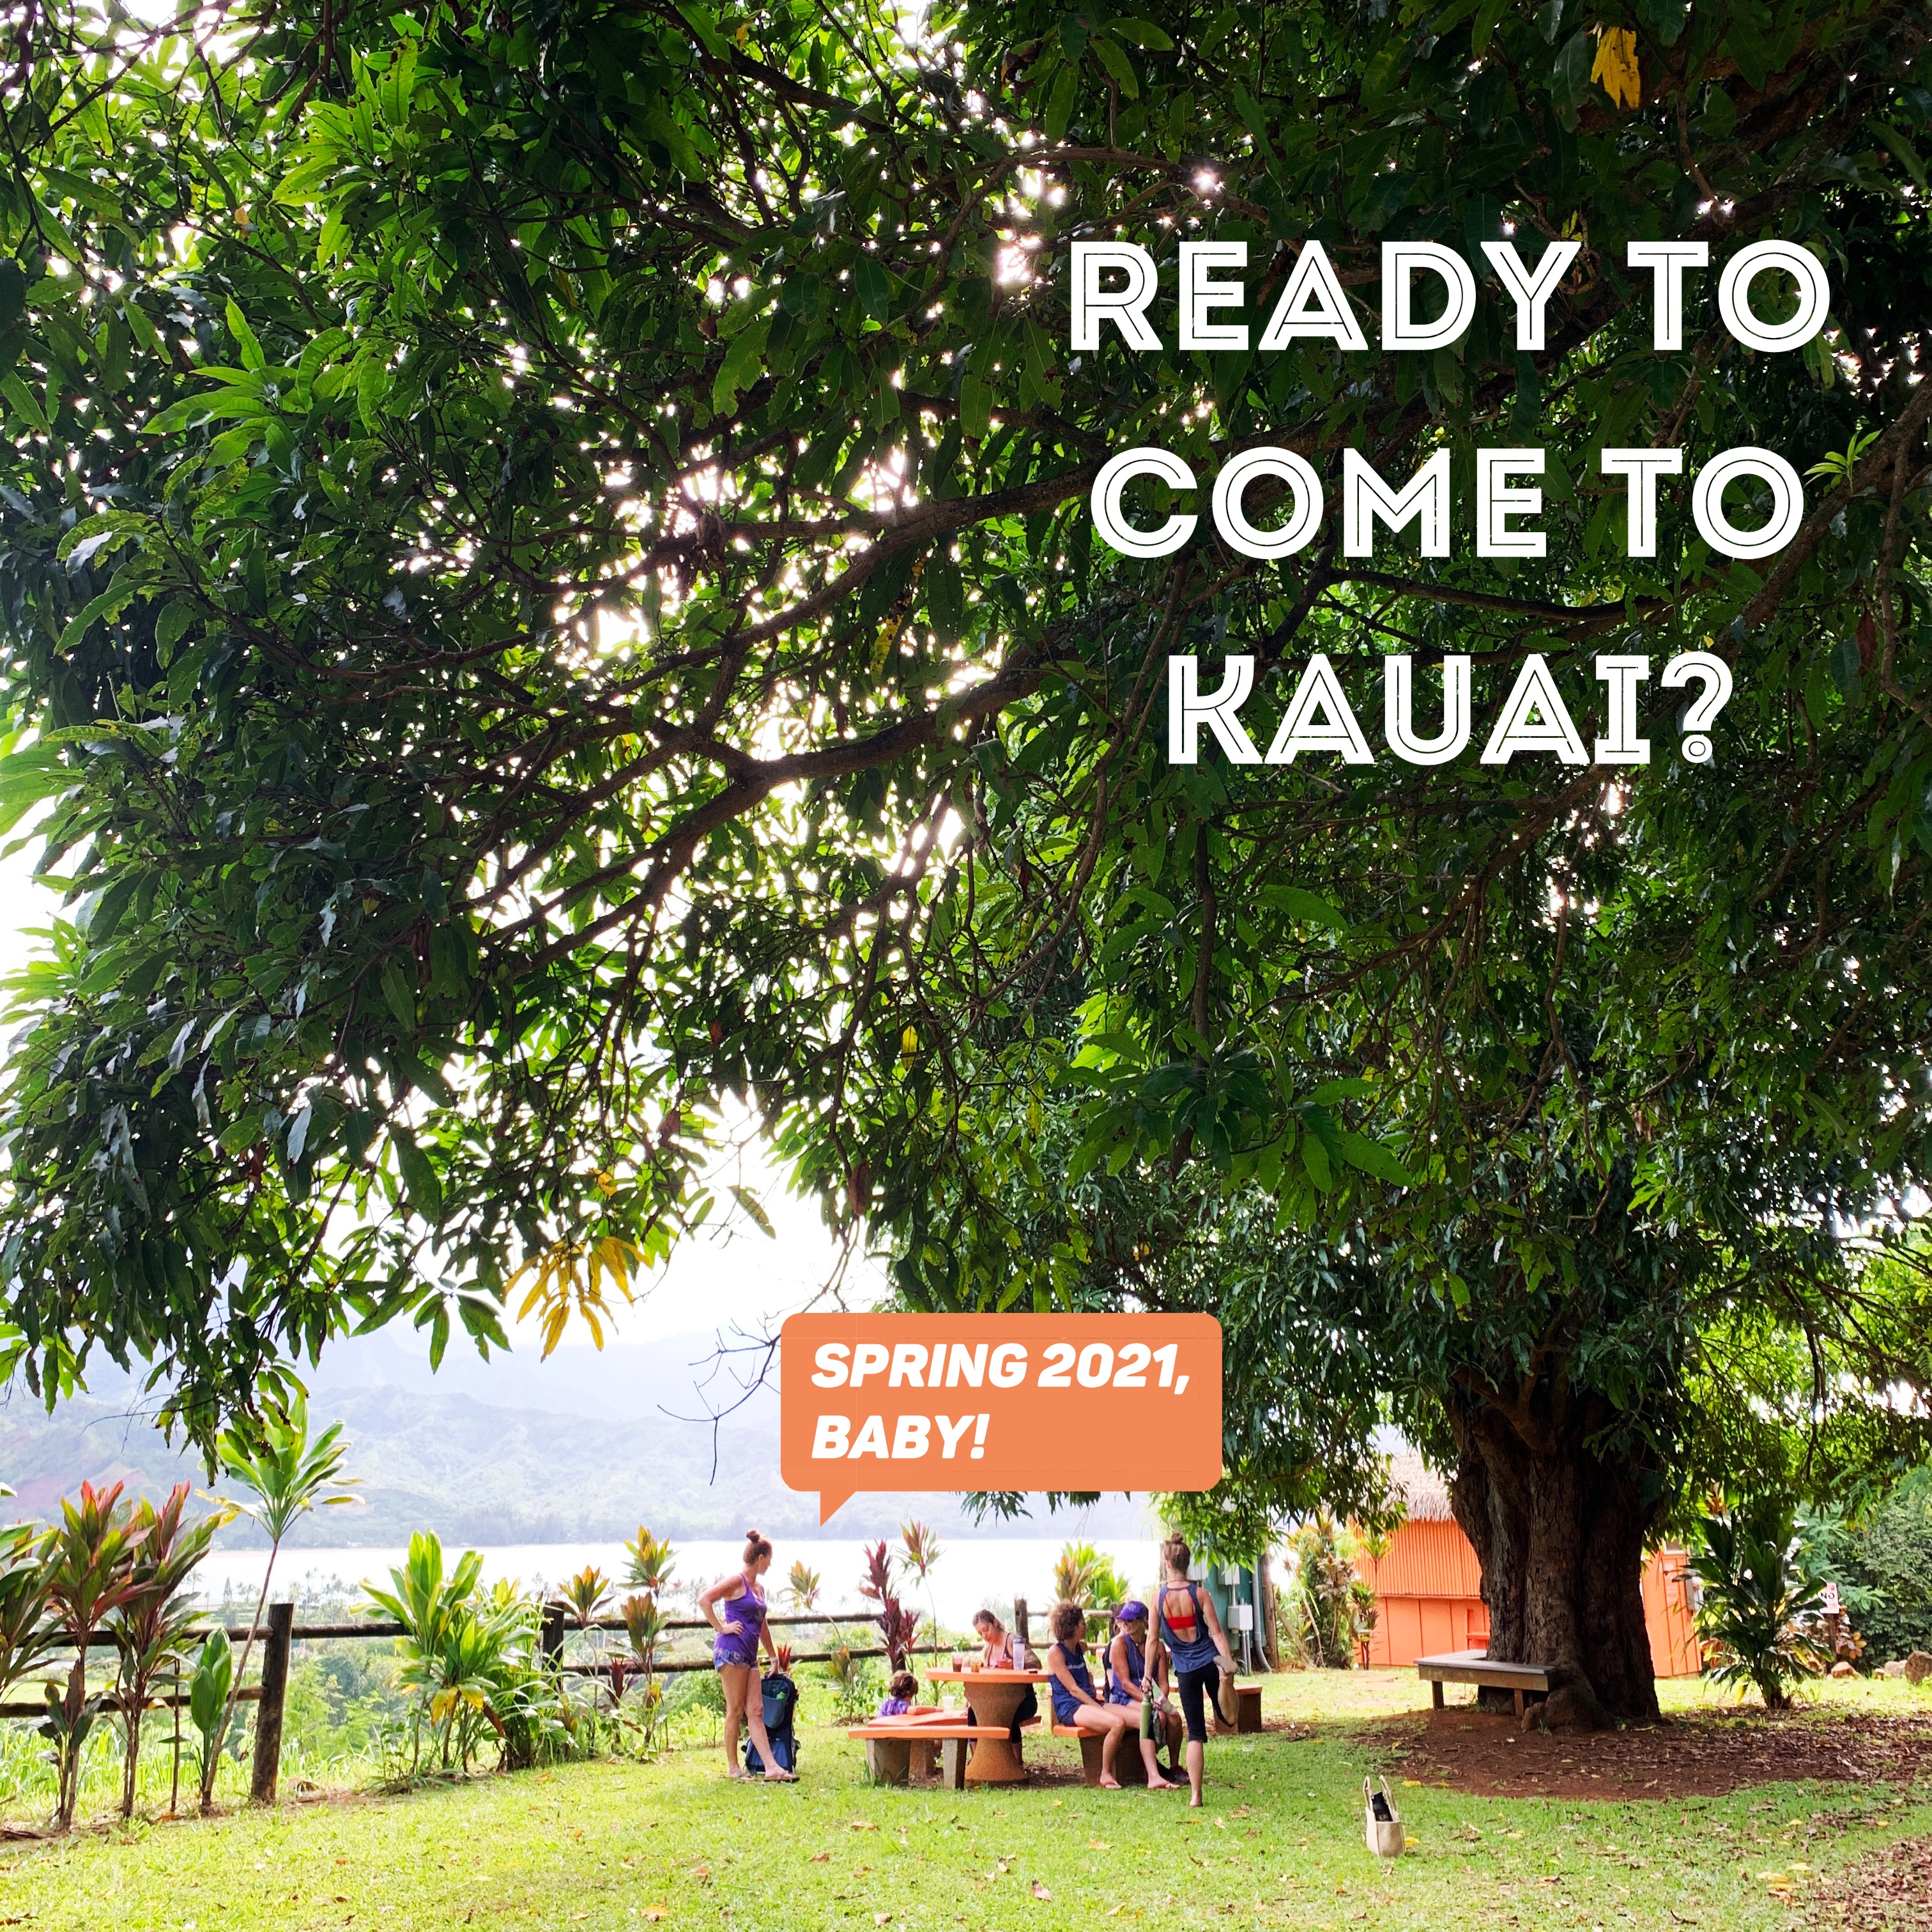 Kauai is HEAVEN